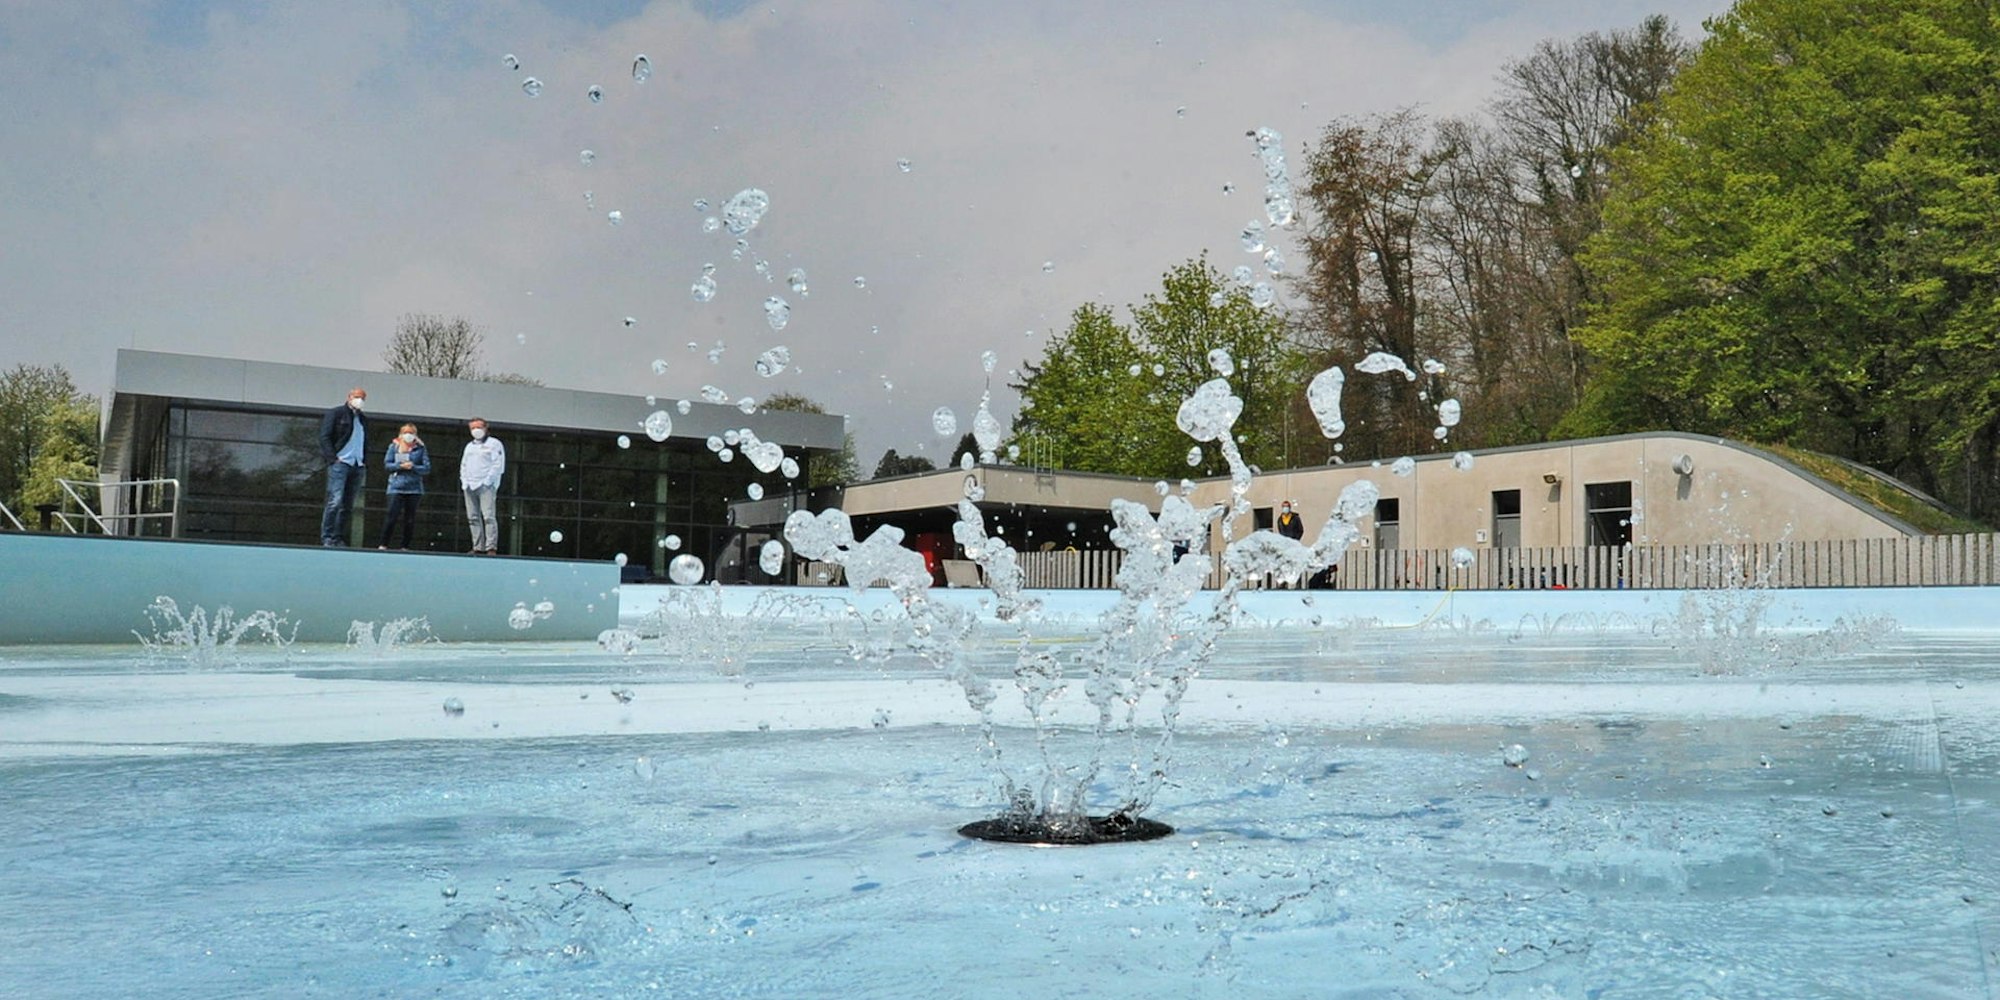 Wasser marsch für die neue Saison im Freibad Wiembachtal, wann auch immer sie starten möge.